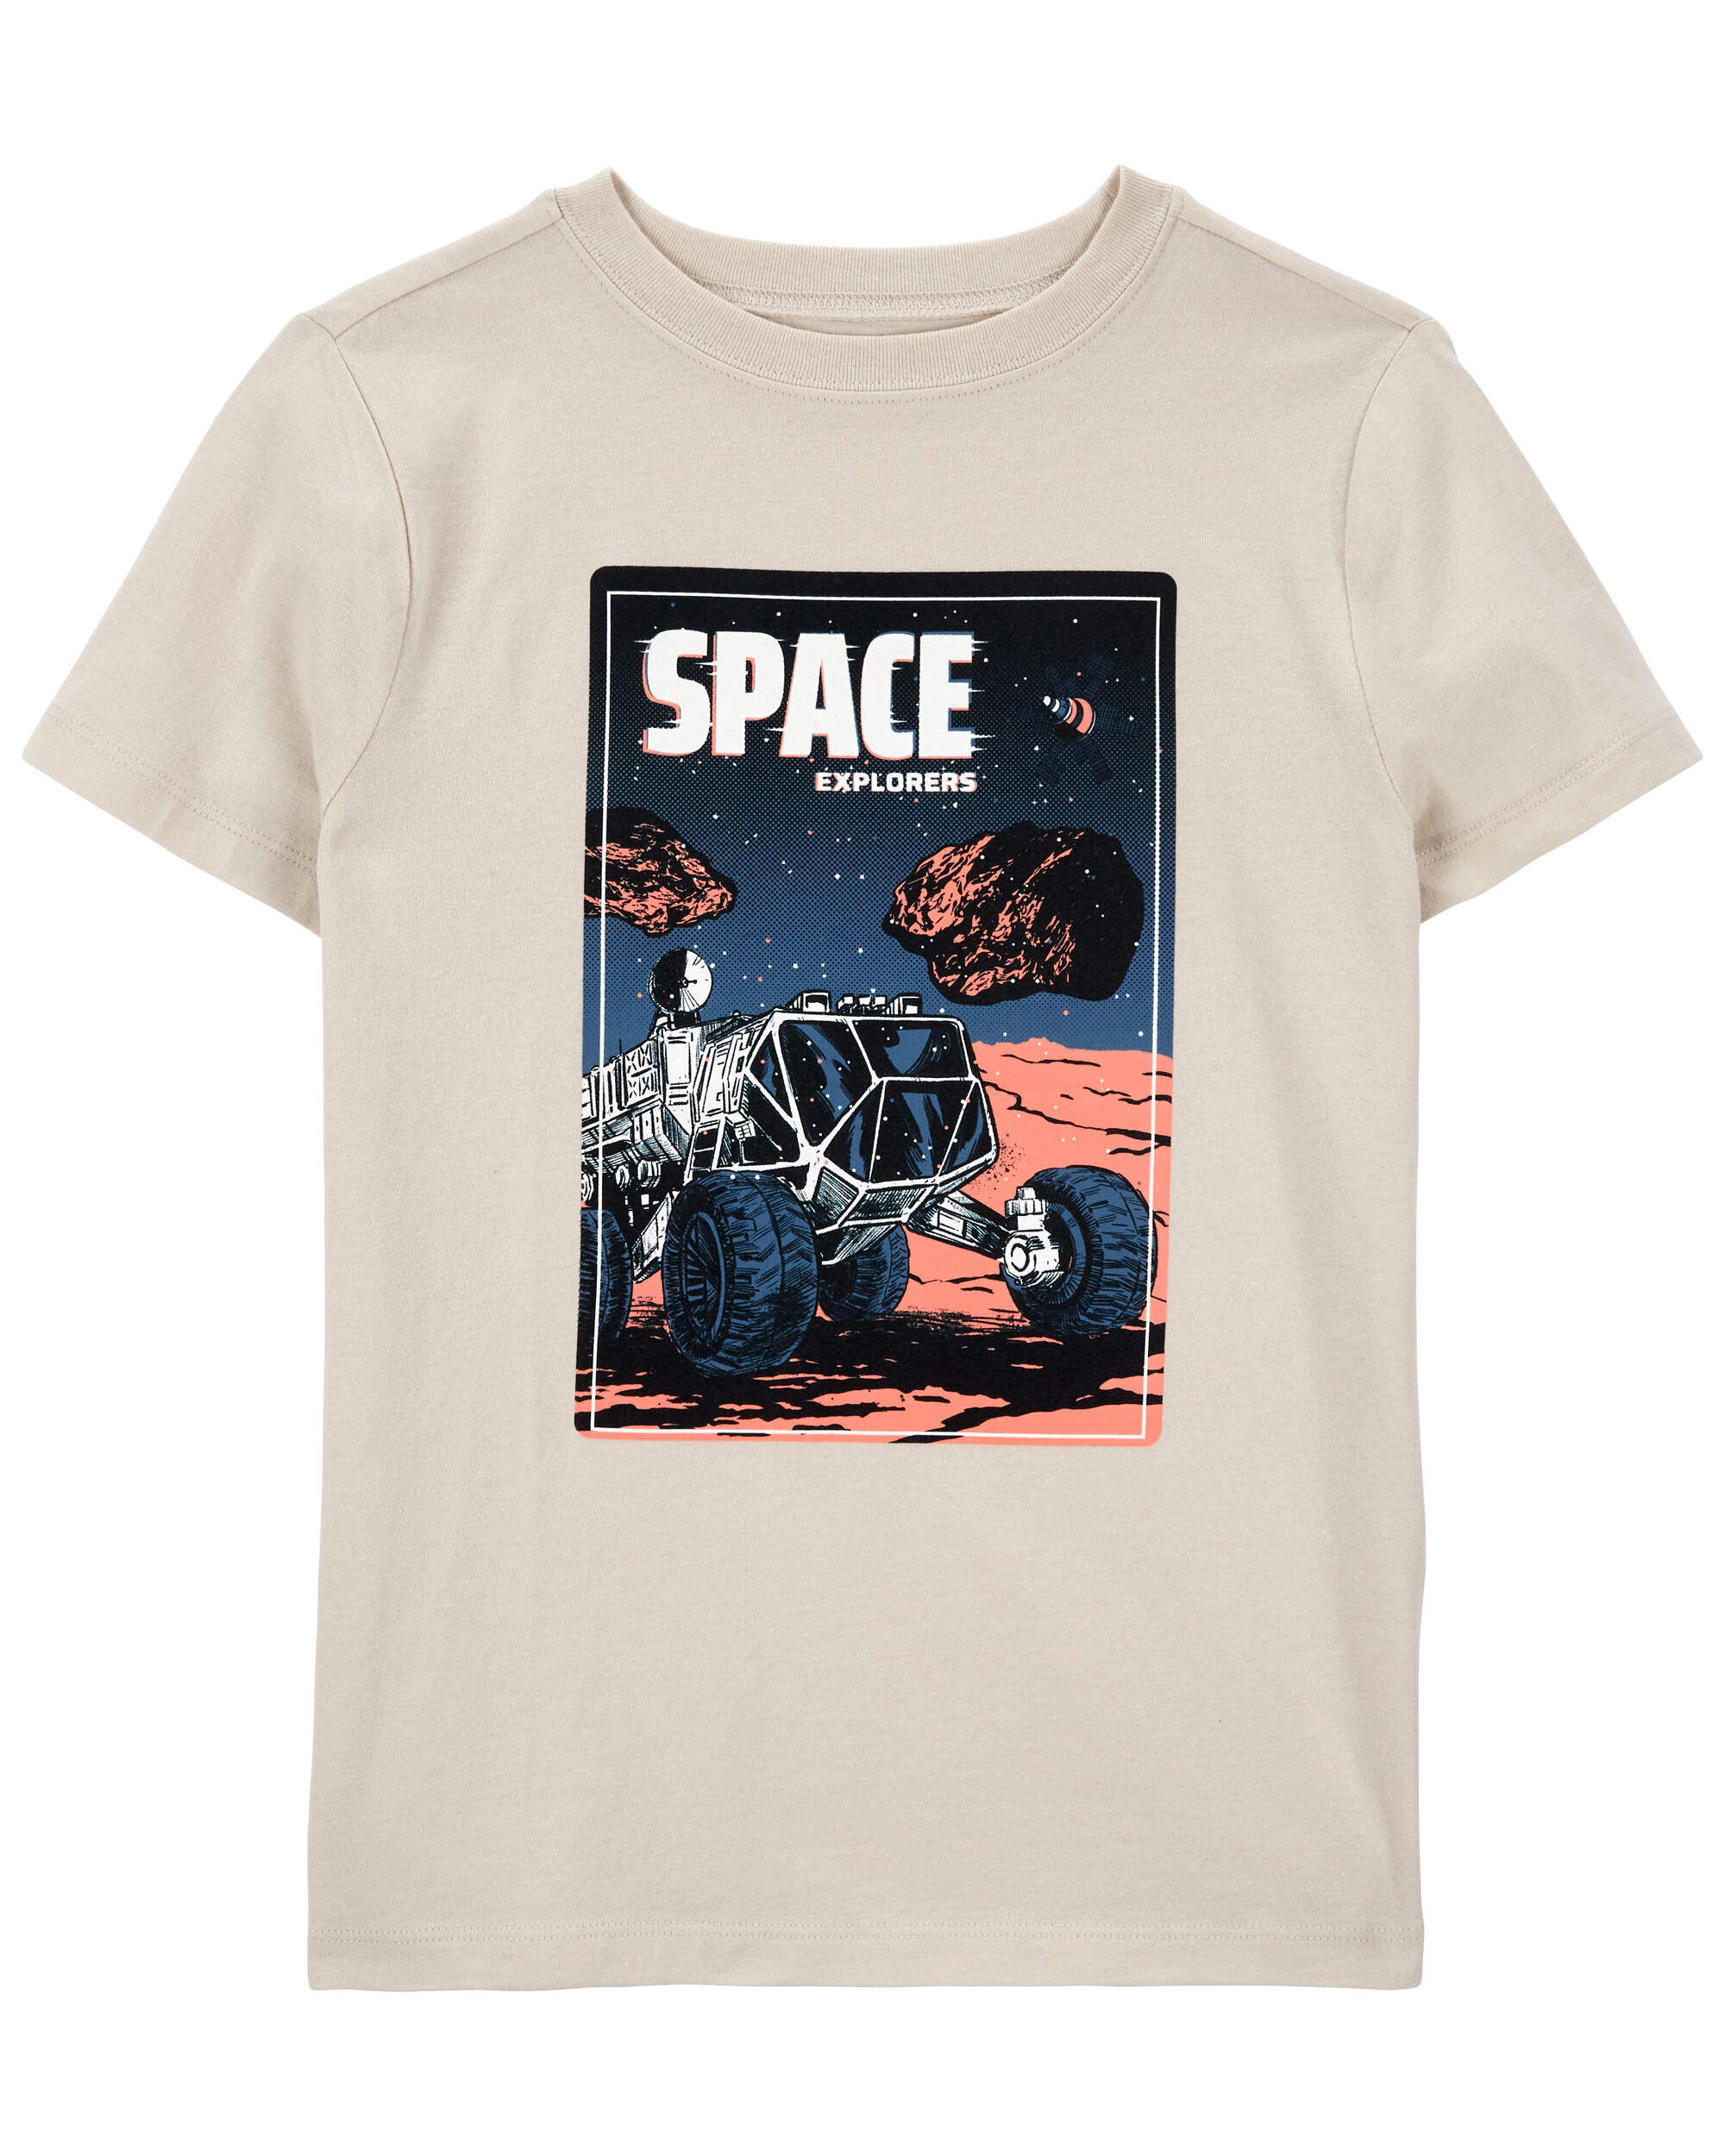 Детская футболка с рисунком «Исследователи космоса» Carter's